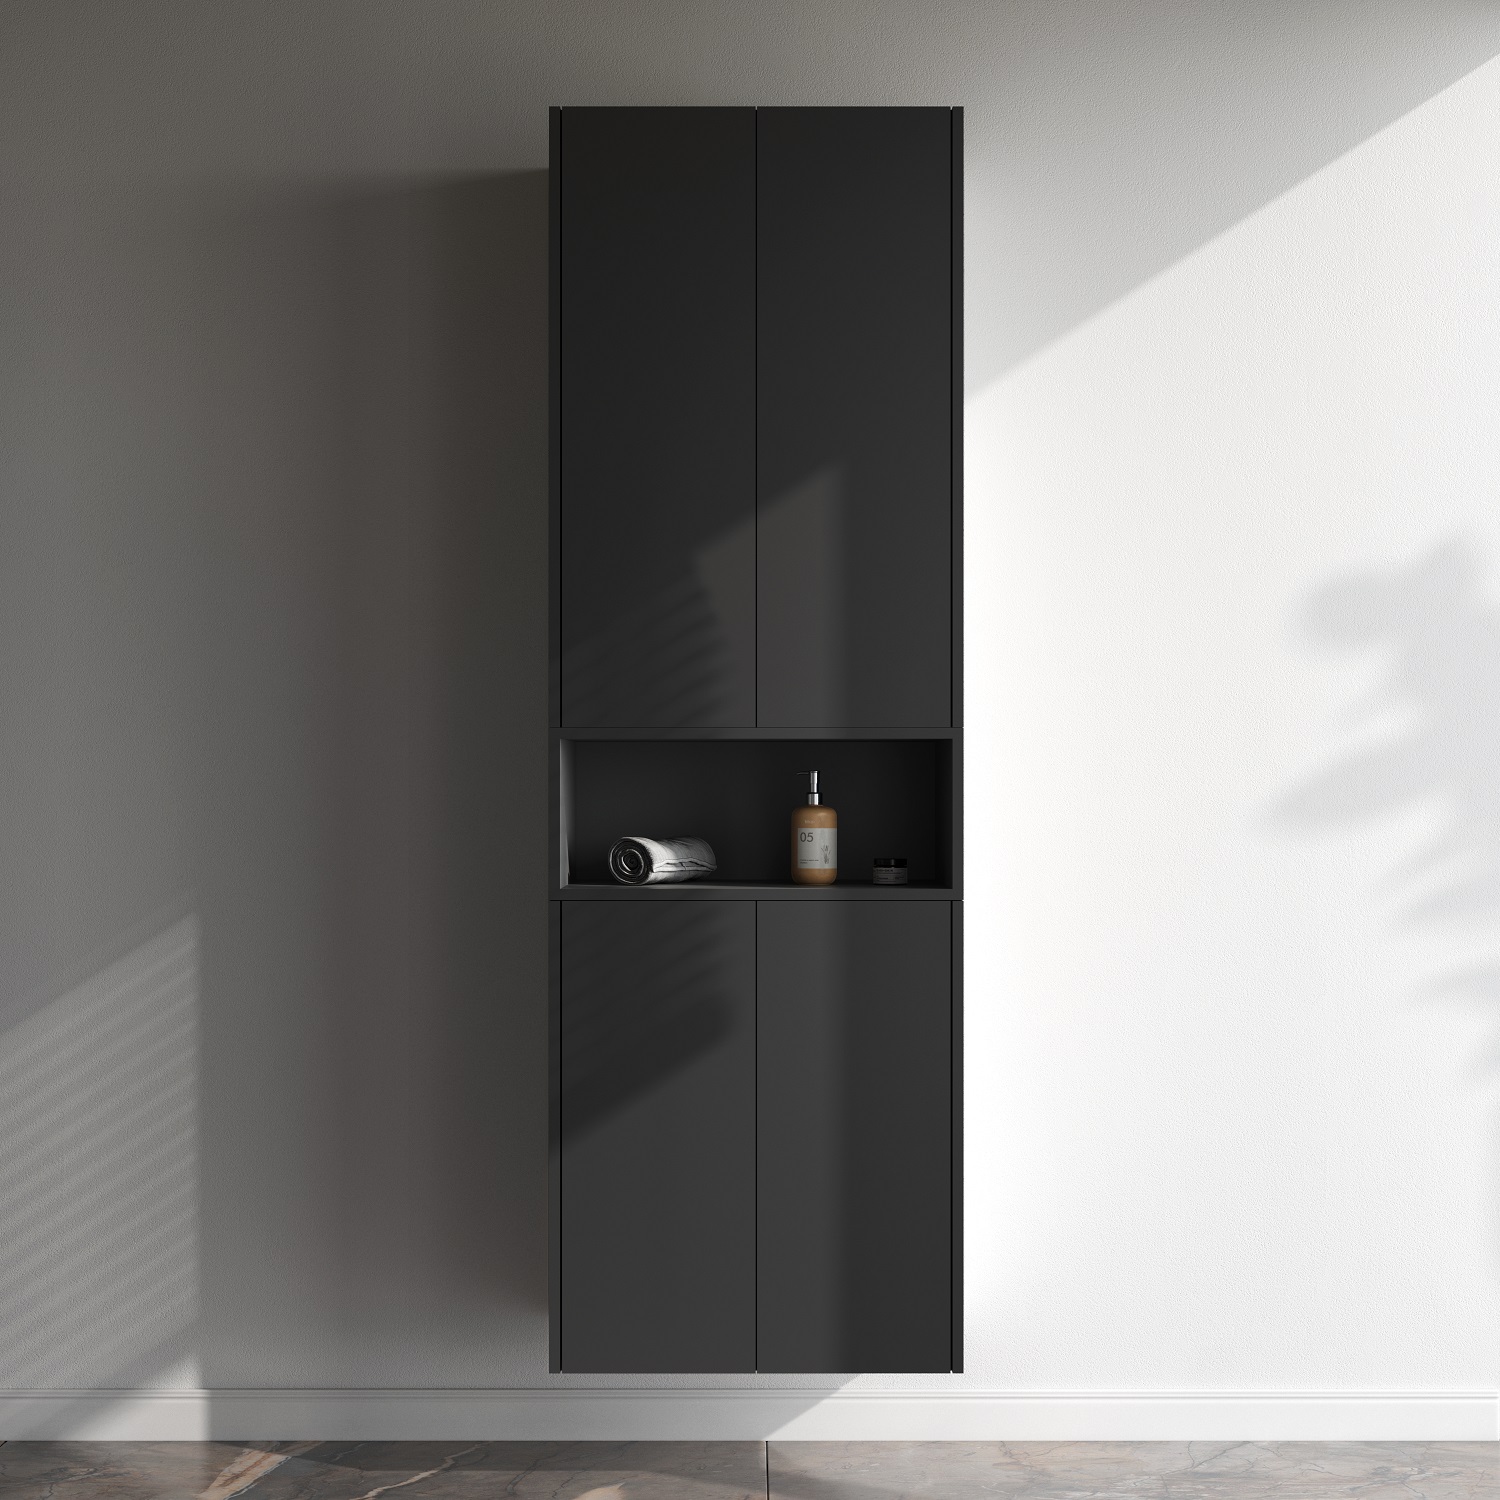 Func open-space для мебели, 60 см, цвет черный матовый